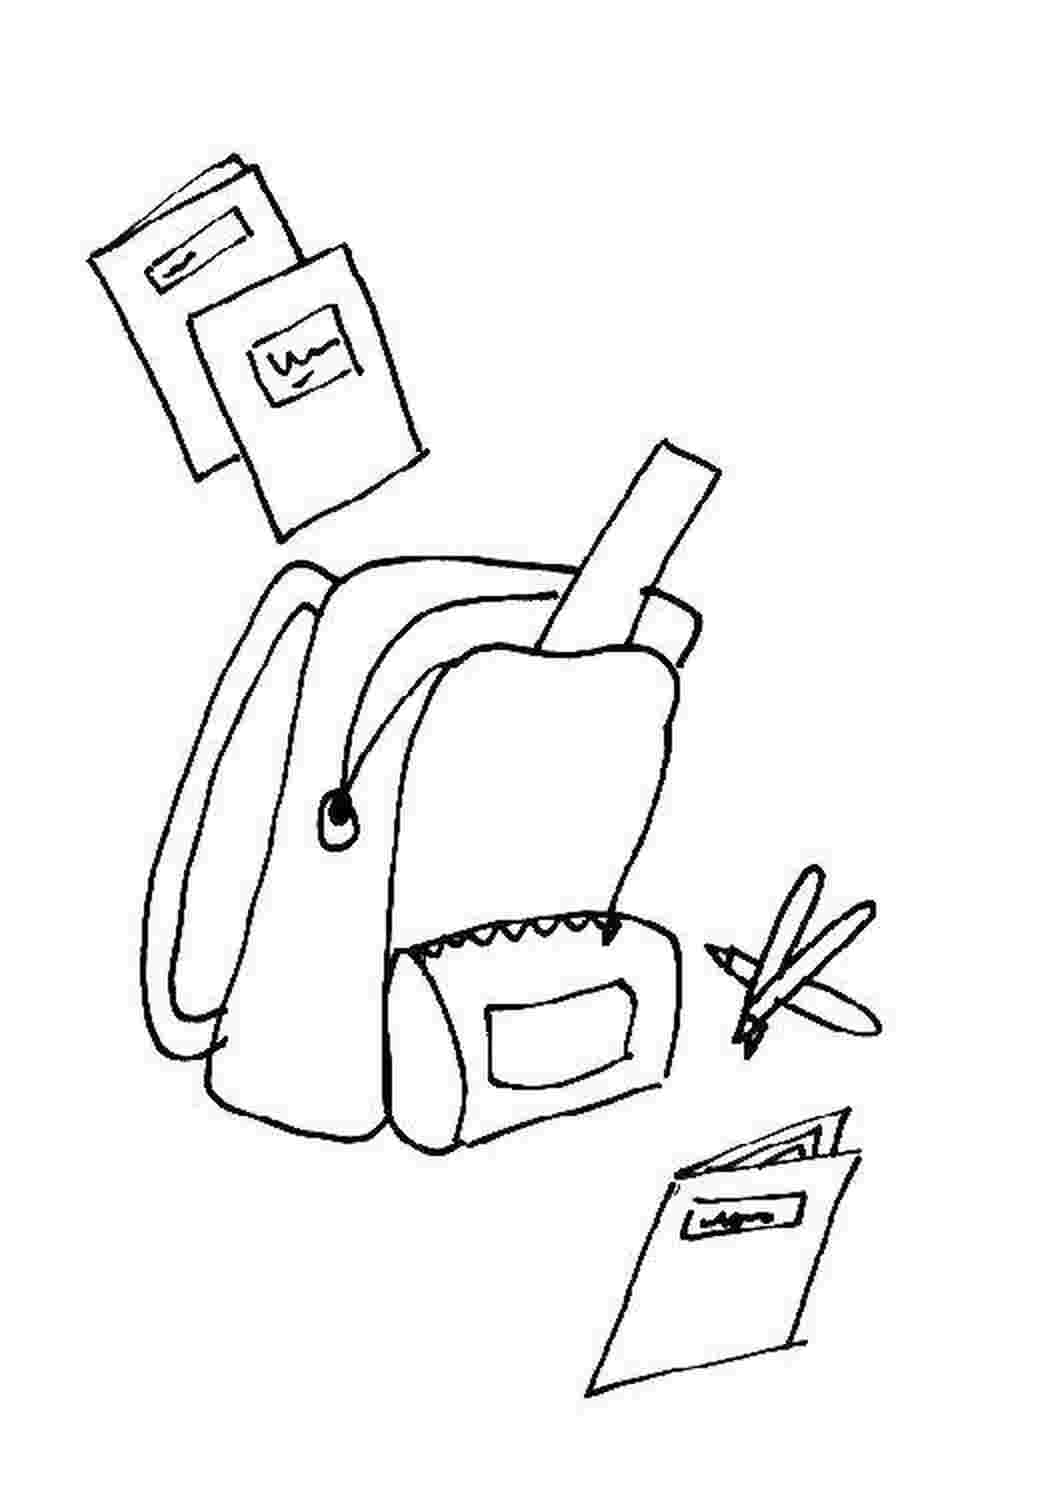 Как нарисовать портфель